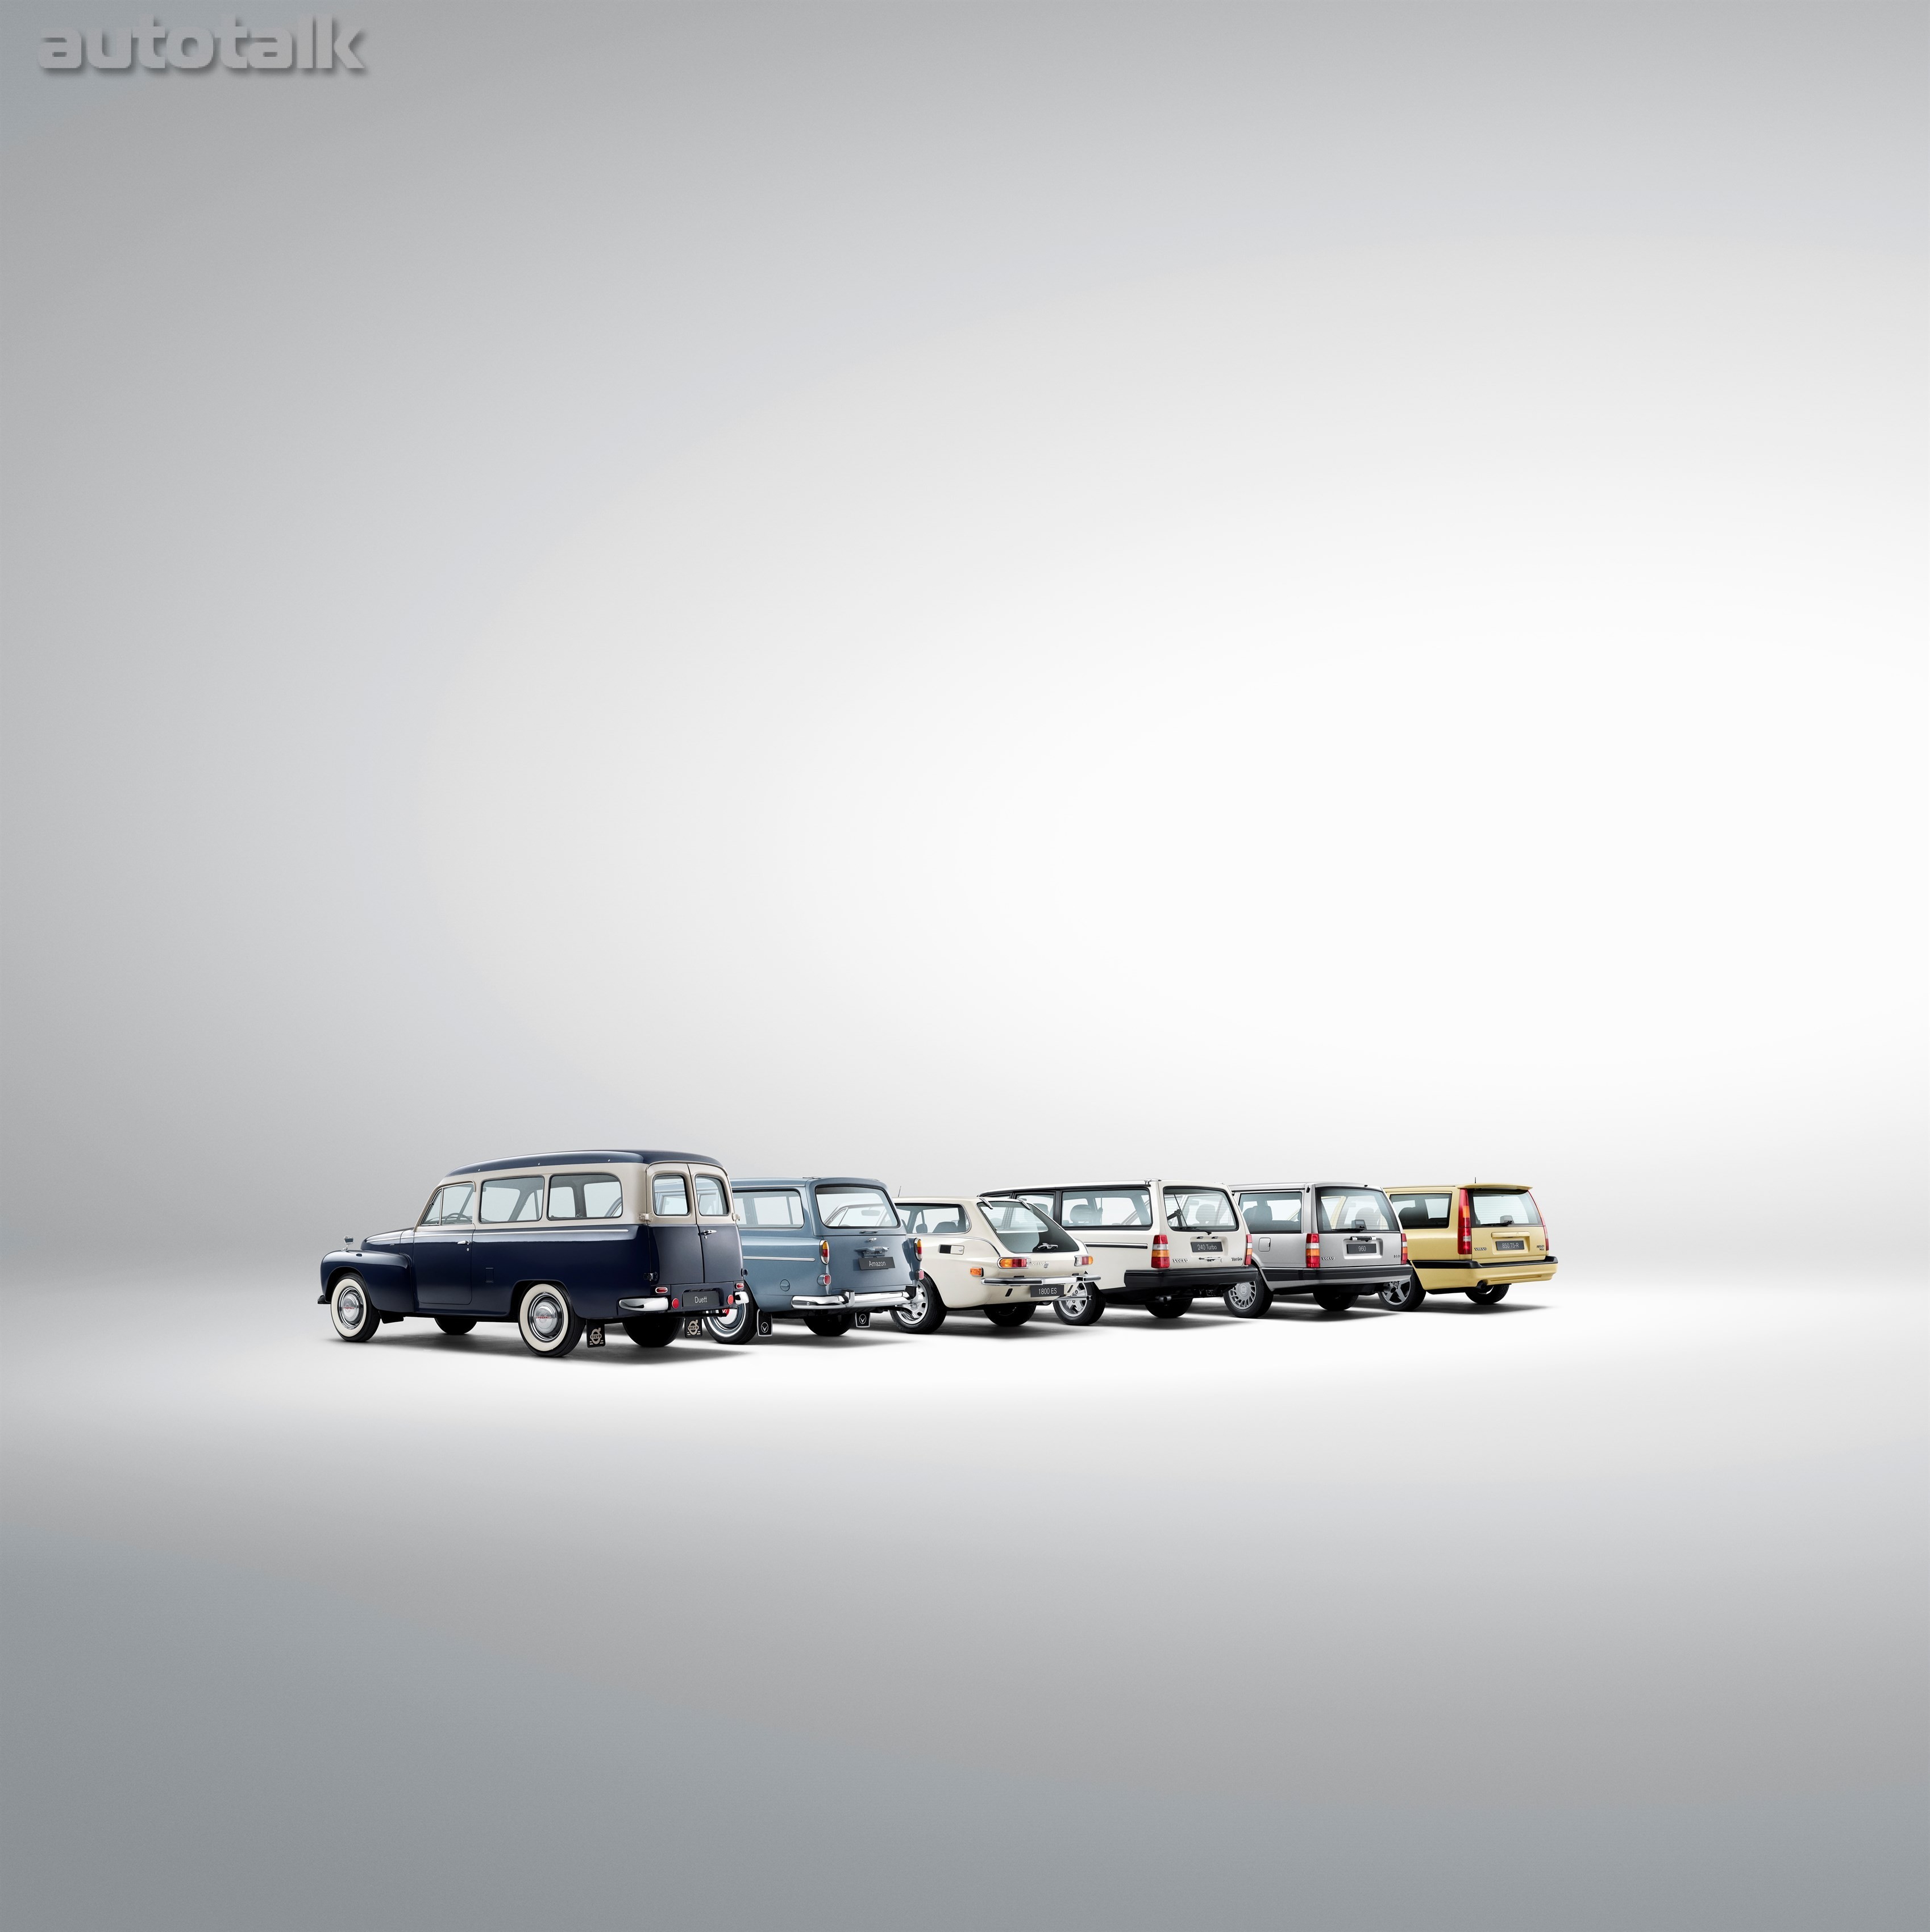 Historical line-up of Volvo estate models